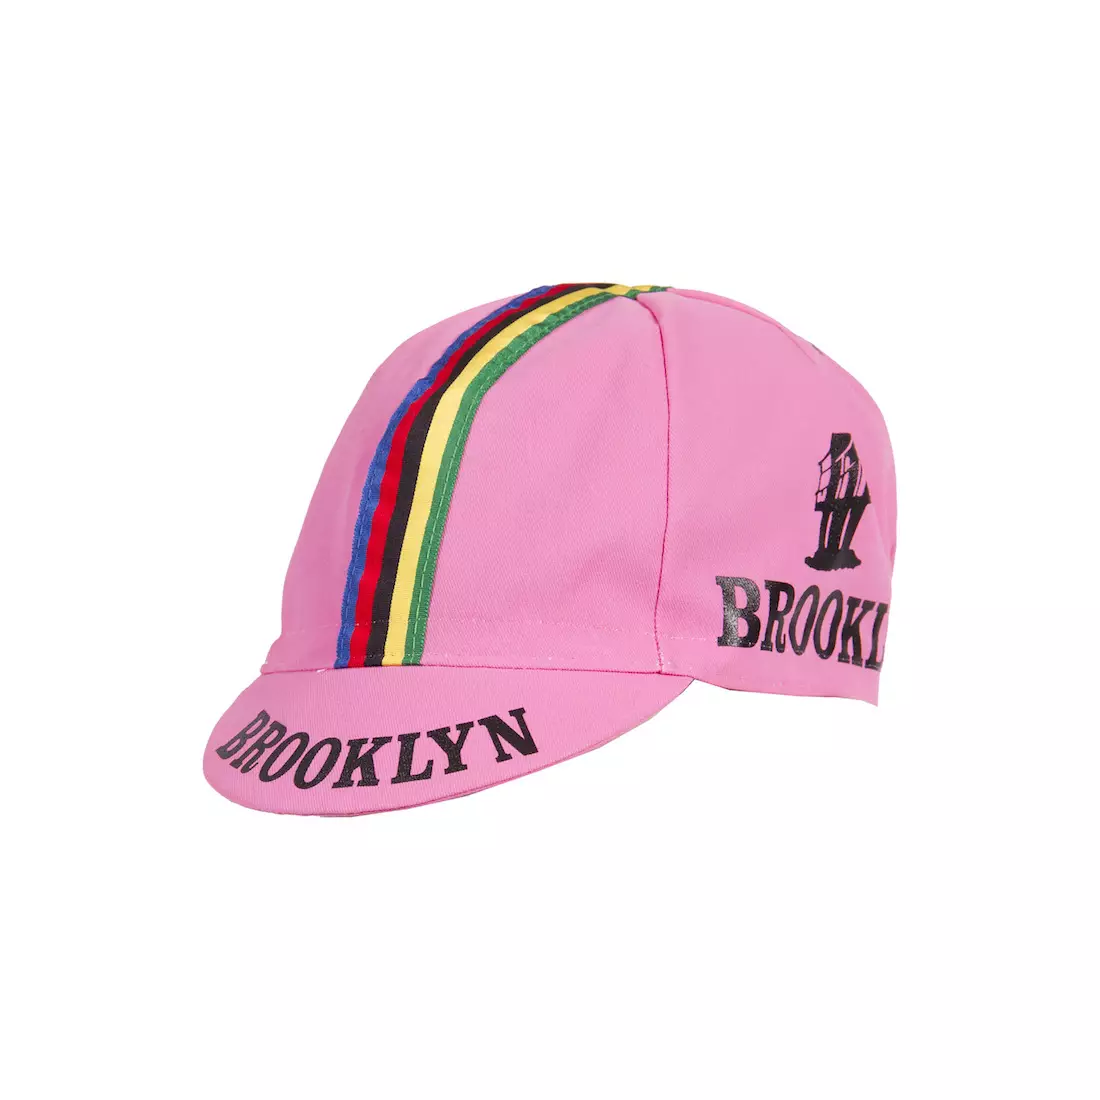 Cyklistická čiapka GIORDANA SS18 - Brooklyn - Giro Pink s pásikom GI-S6-COCA-BROK-GIRO jedna veľ.